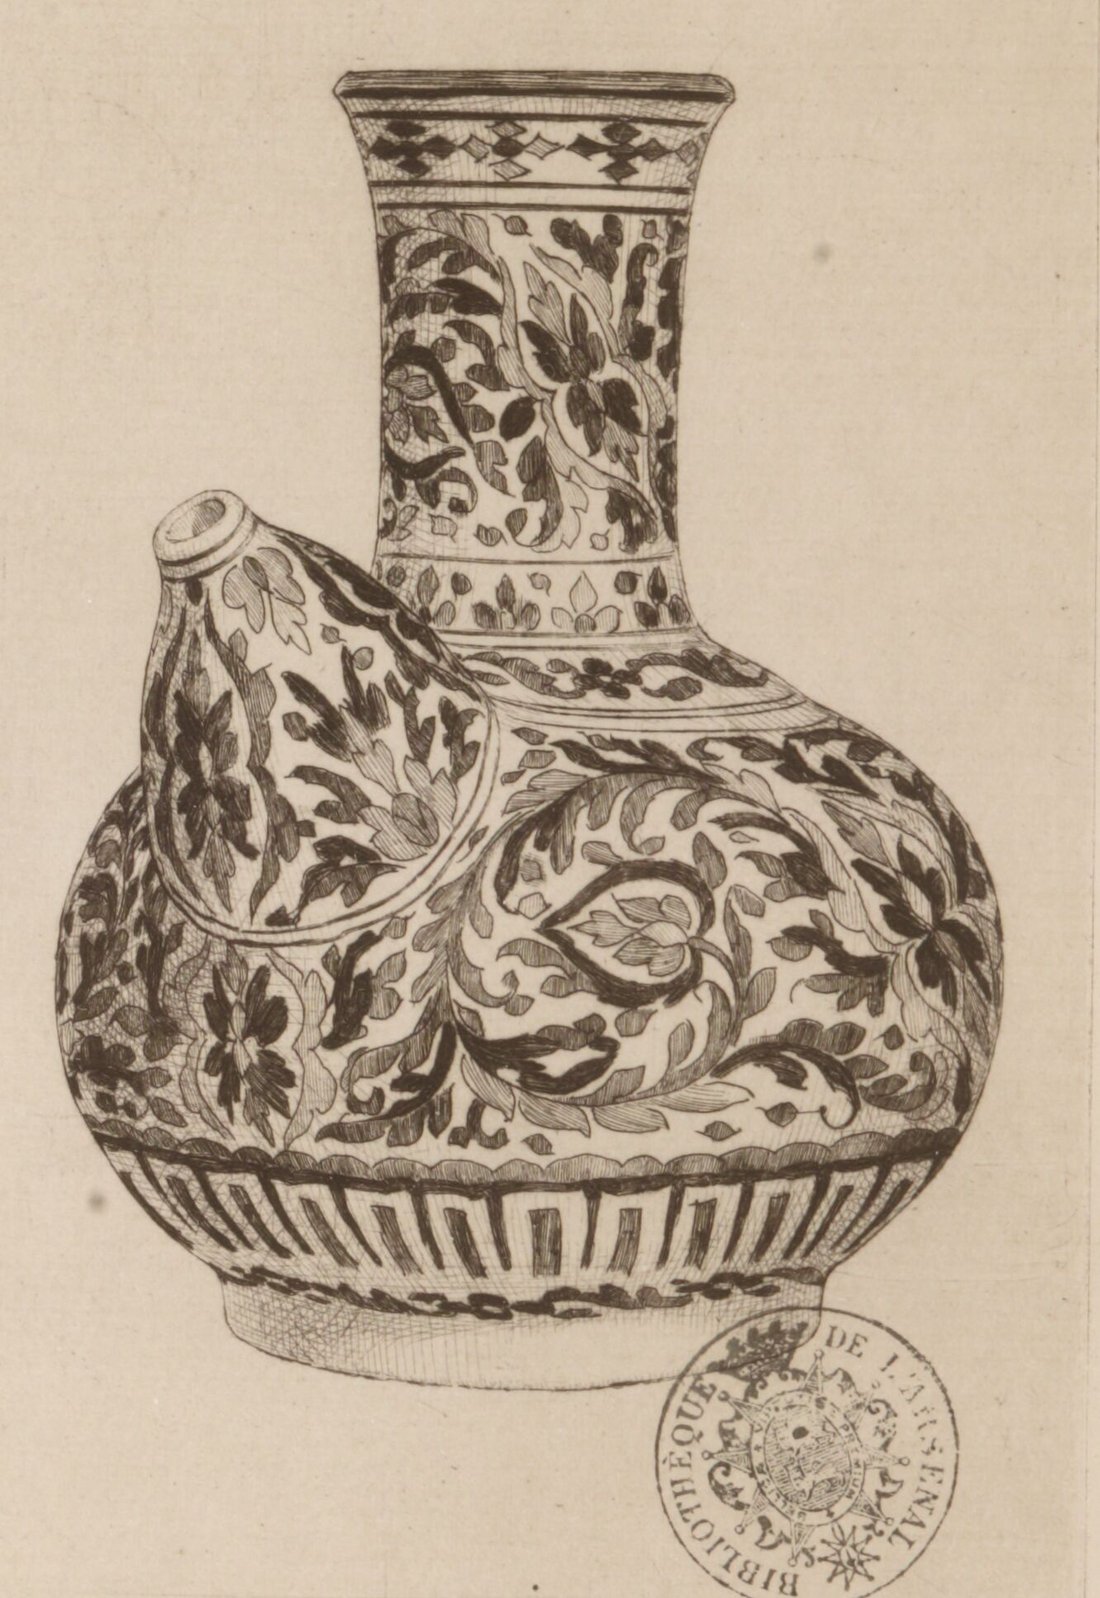 Print of a porcelain vase